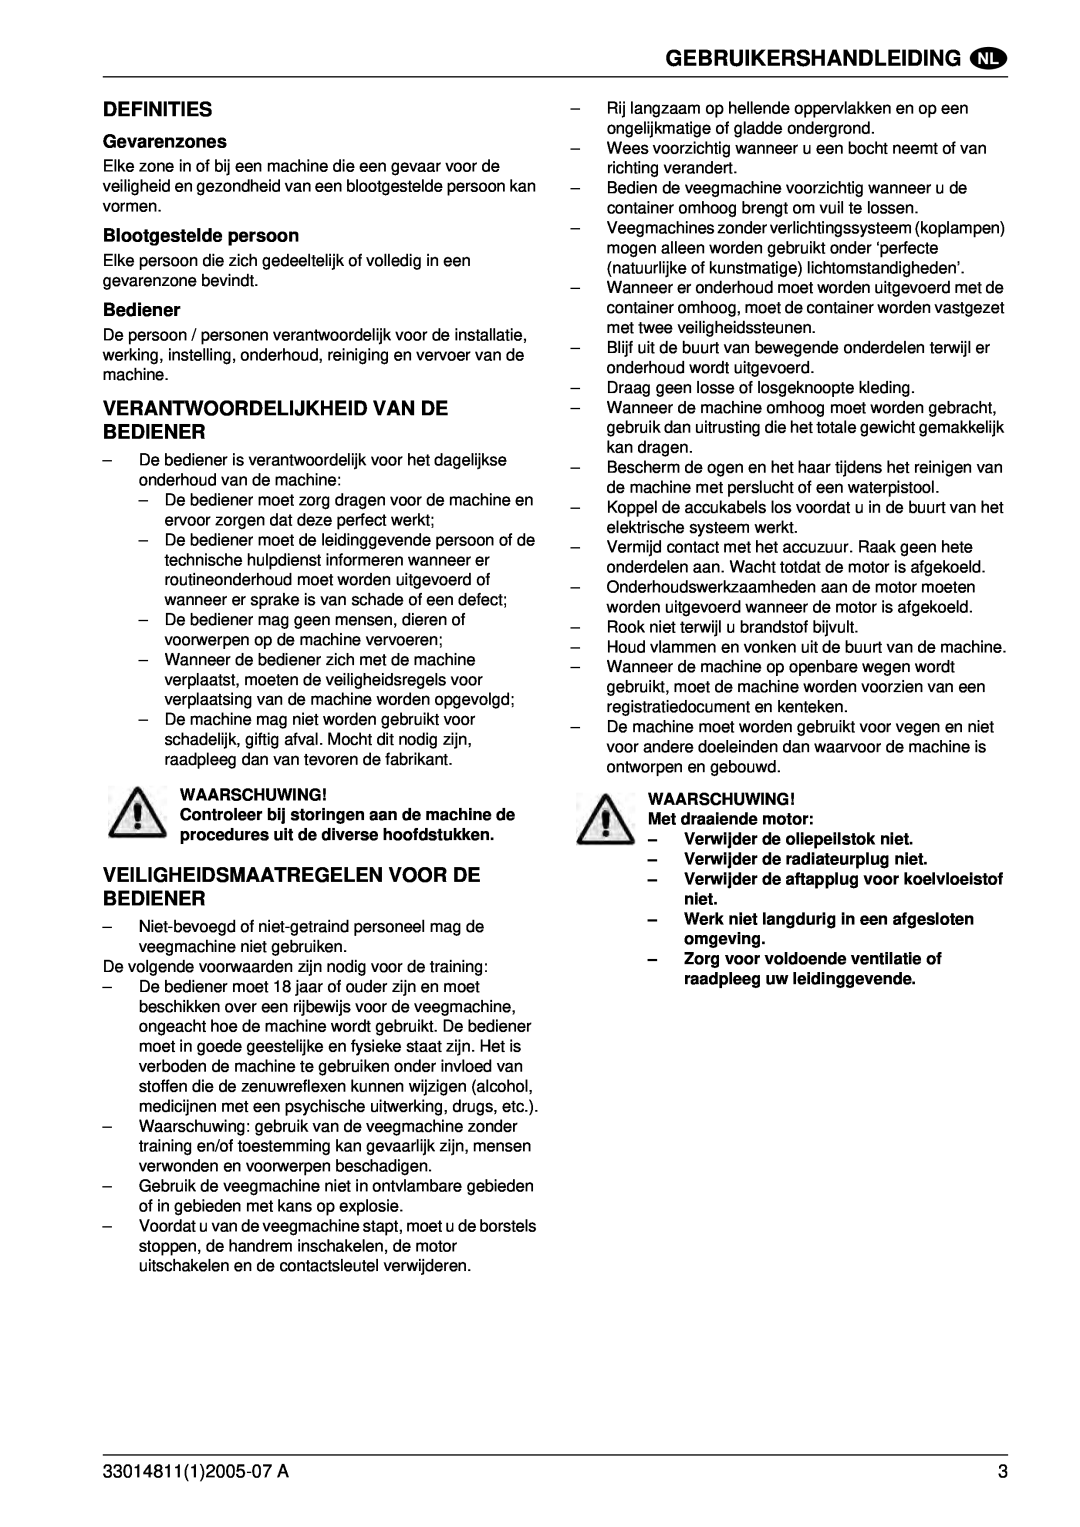 Nilfisk-ALTO SR 1450 B-D Definities, Verantwoordelijkheid Van De Bediener, Veiligheidsmaatregelen Voor De Bediener 